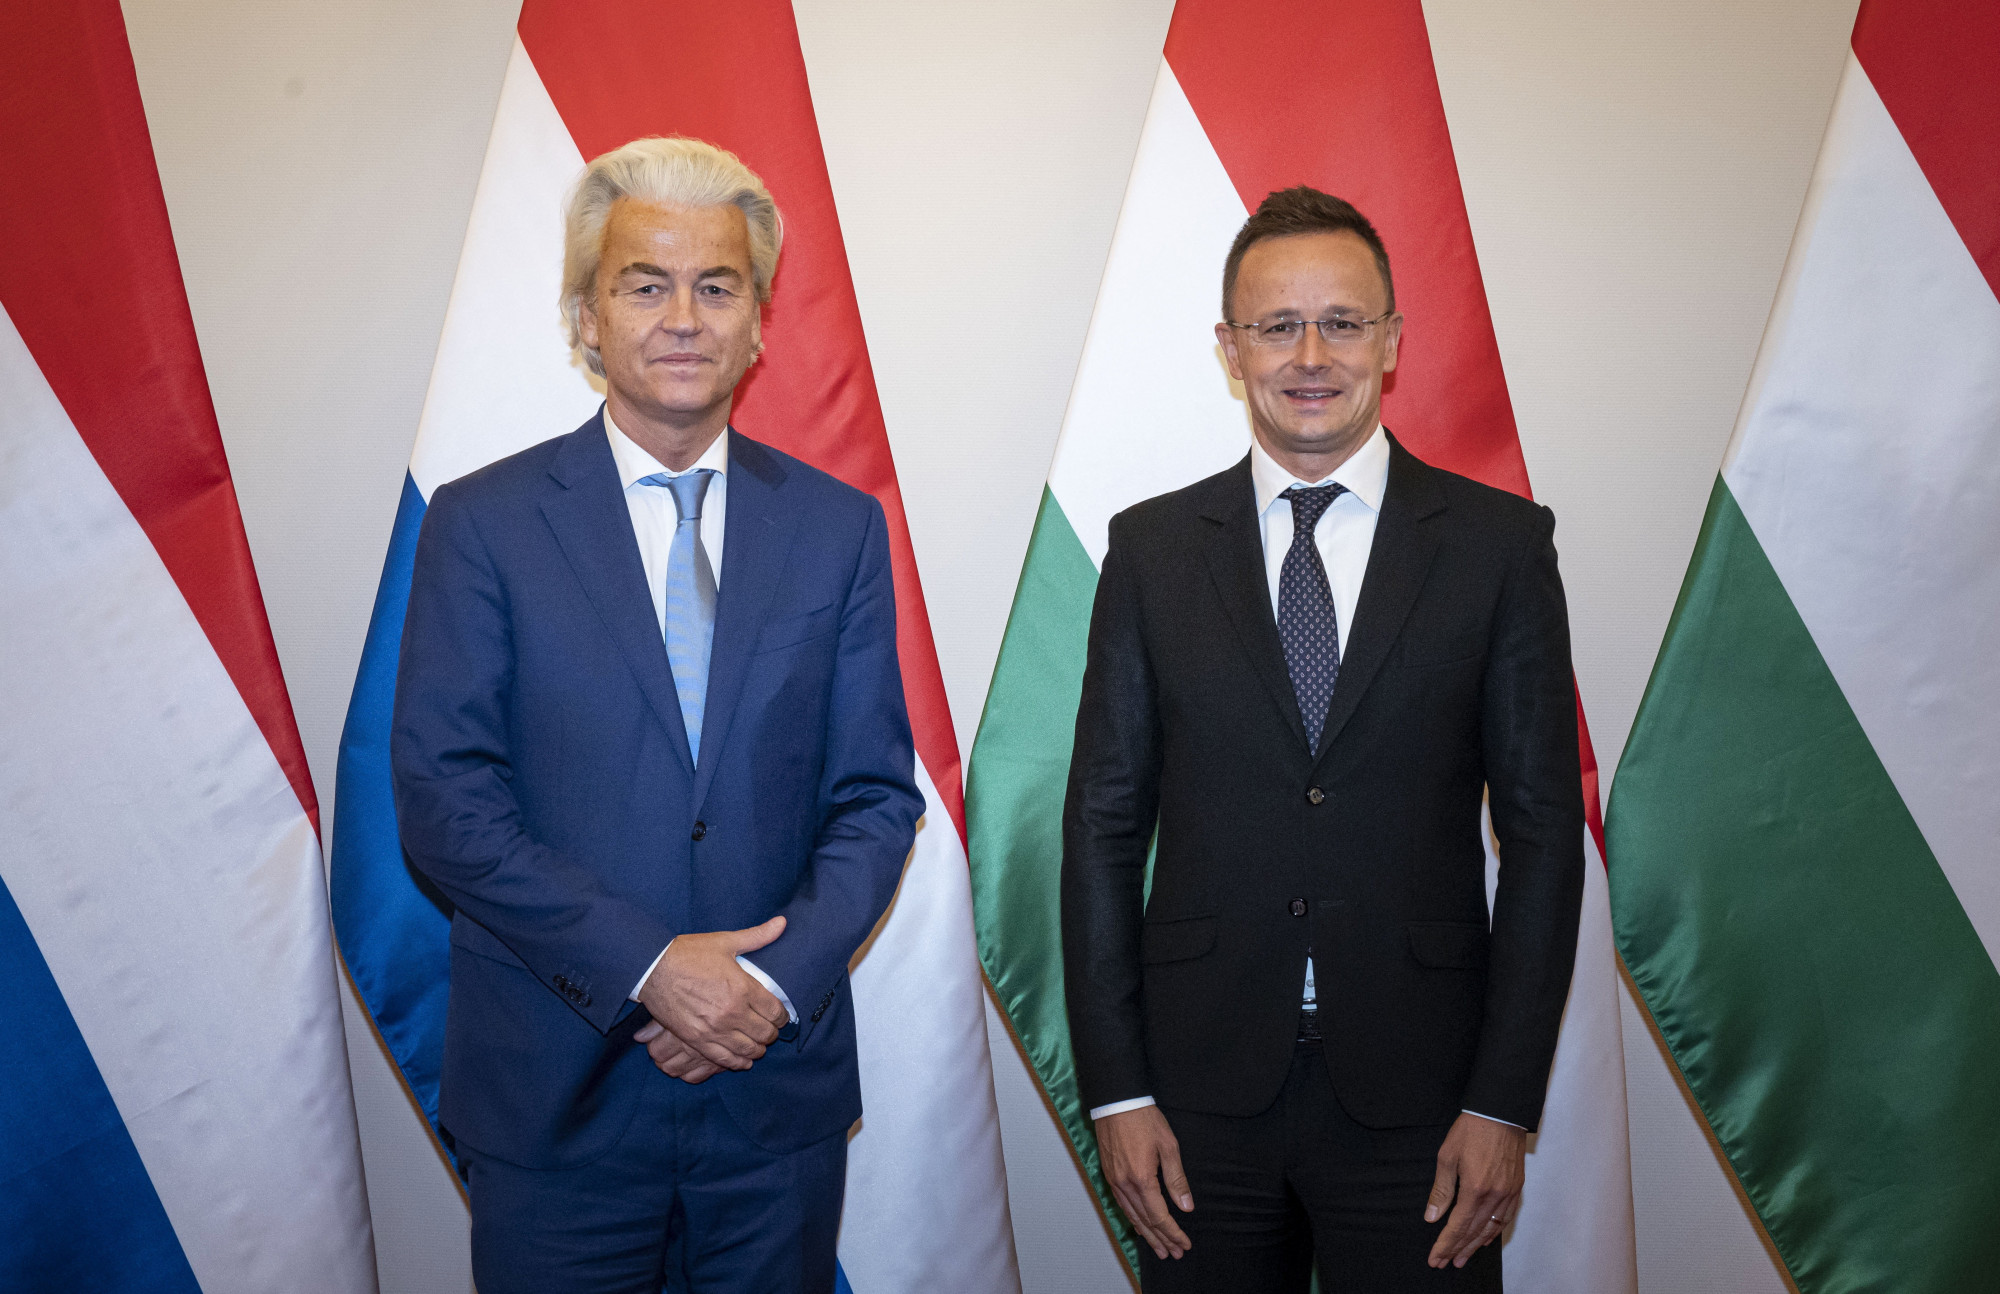 Itt a bizonyíték arra, hogy Orbánéknak vannak barátaik Európában: Szijjártó kitüntette Geert Wilderst